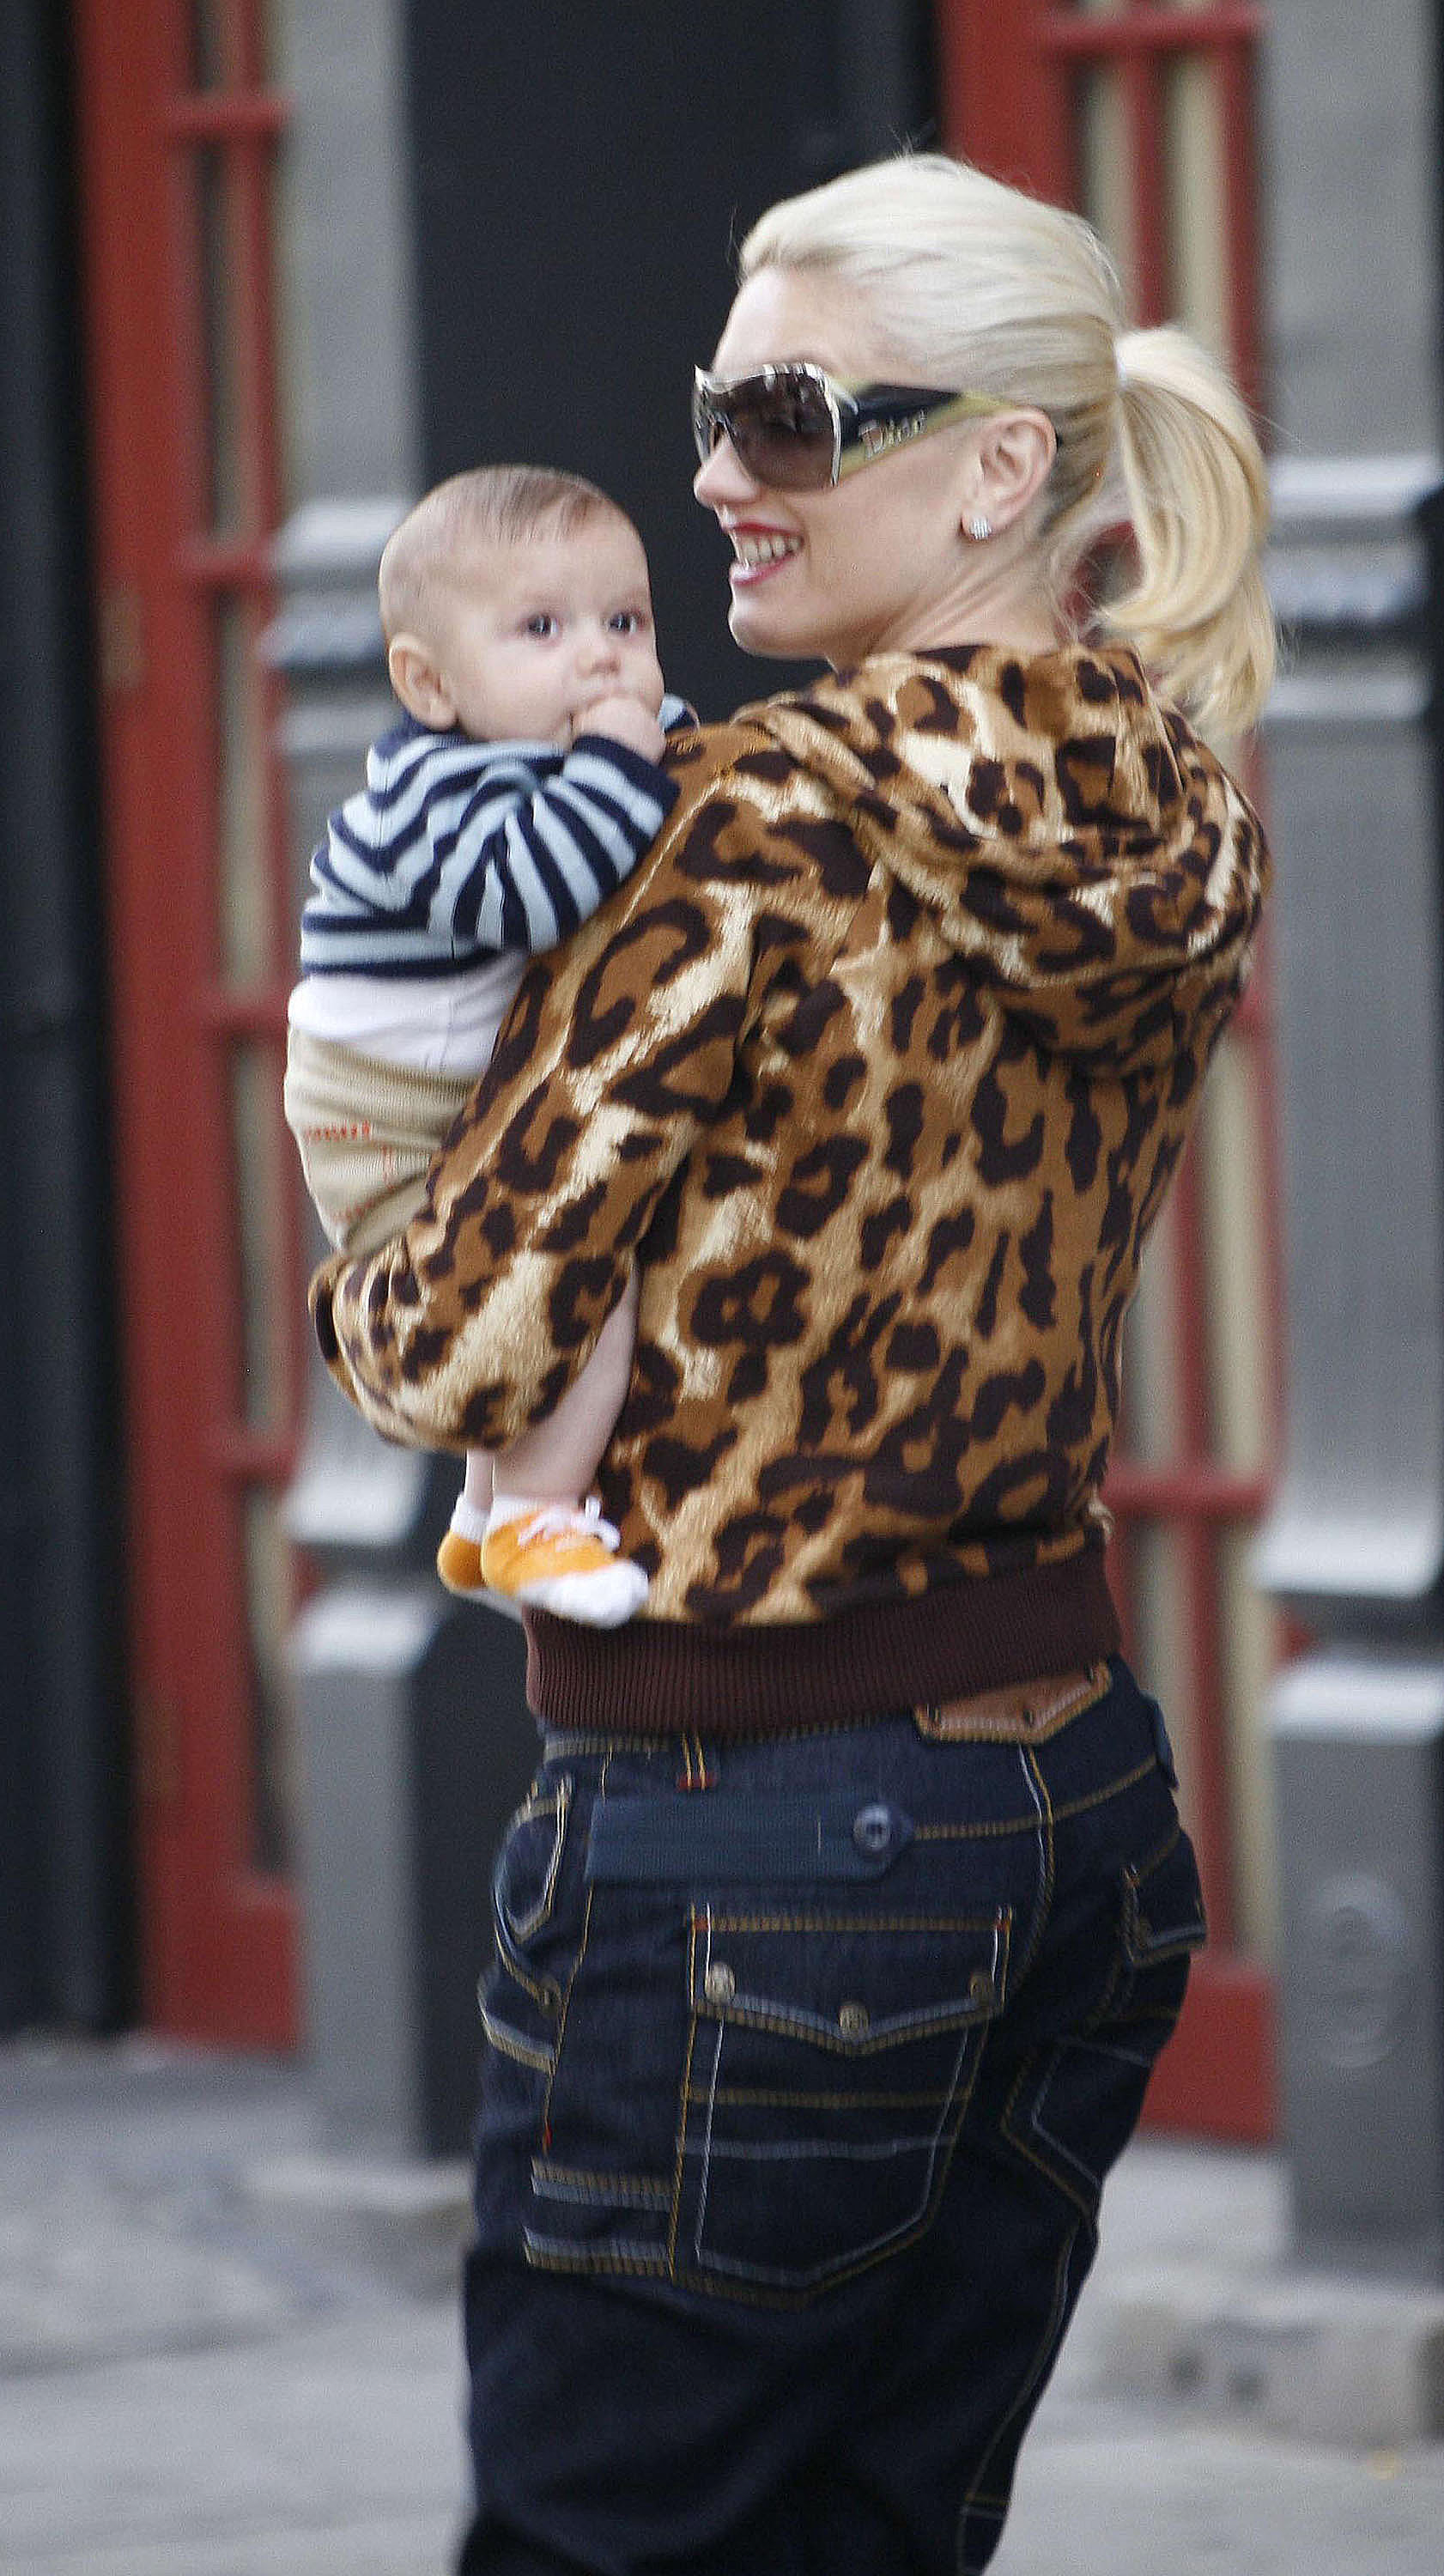 Gwen Stefani vista con su hijo Kingston Rossdale en Nueva York el 11 de septiembre de 2006 | Fuente: Getty Images